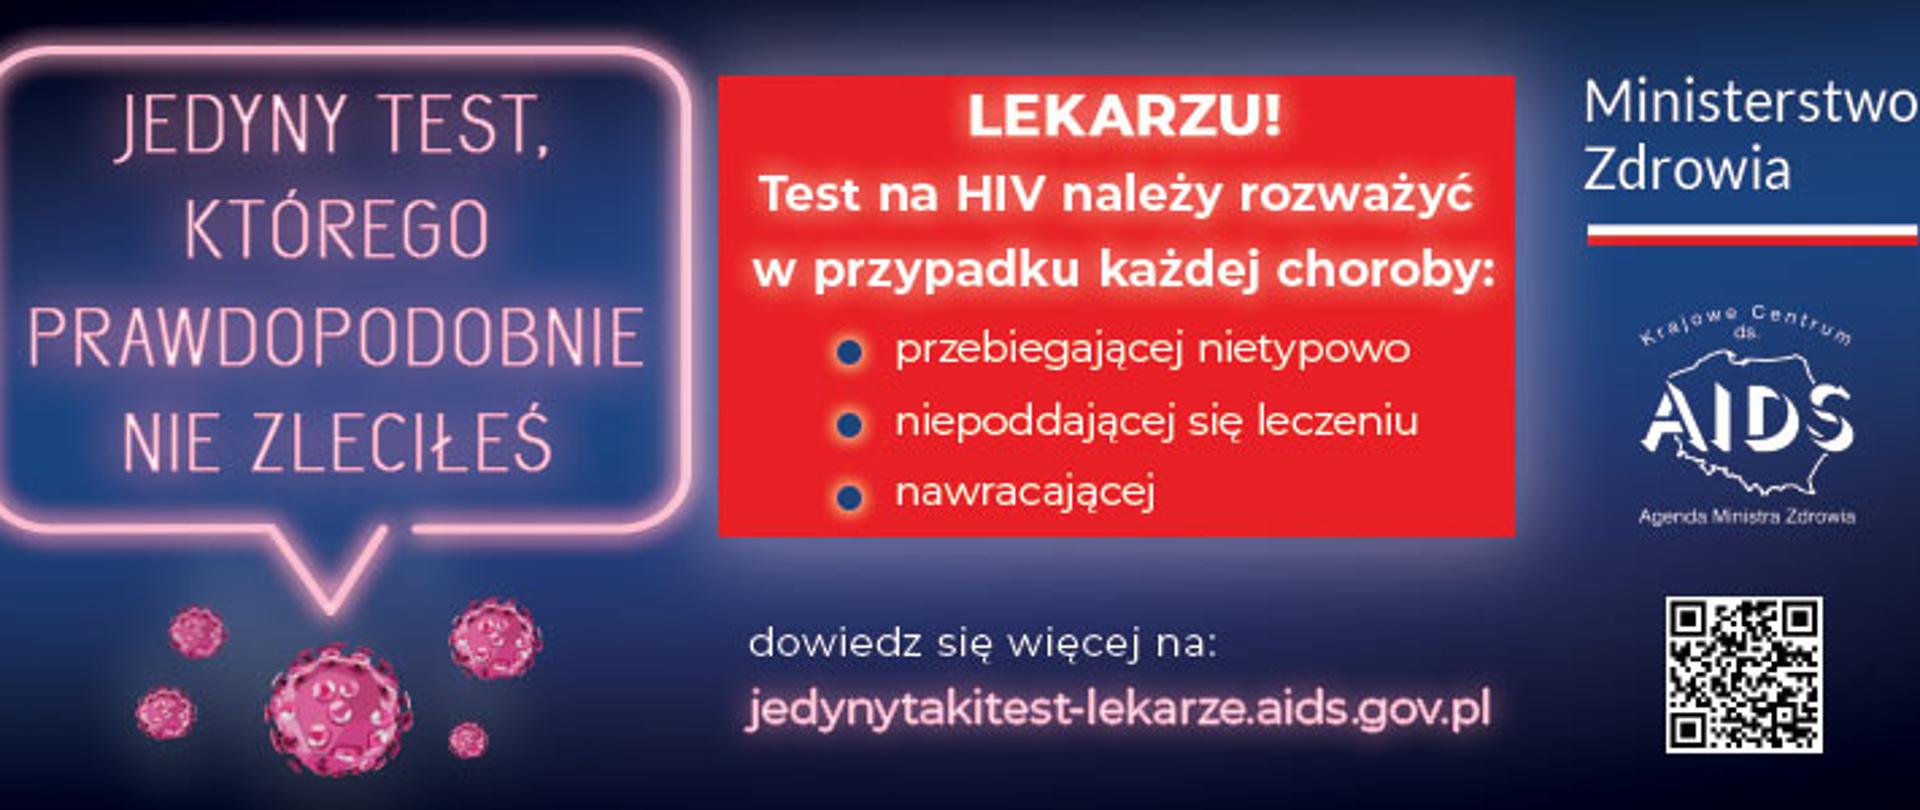 Plakat przedstawia rycinę wirusa oraz duży tekst "Jedyny test, którego prawdopodobnie nie zleciłeś", a także adres strony internetowej kampanii dot. wirusa HIV